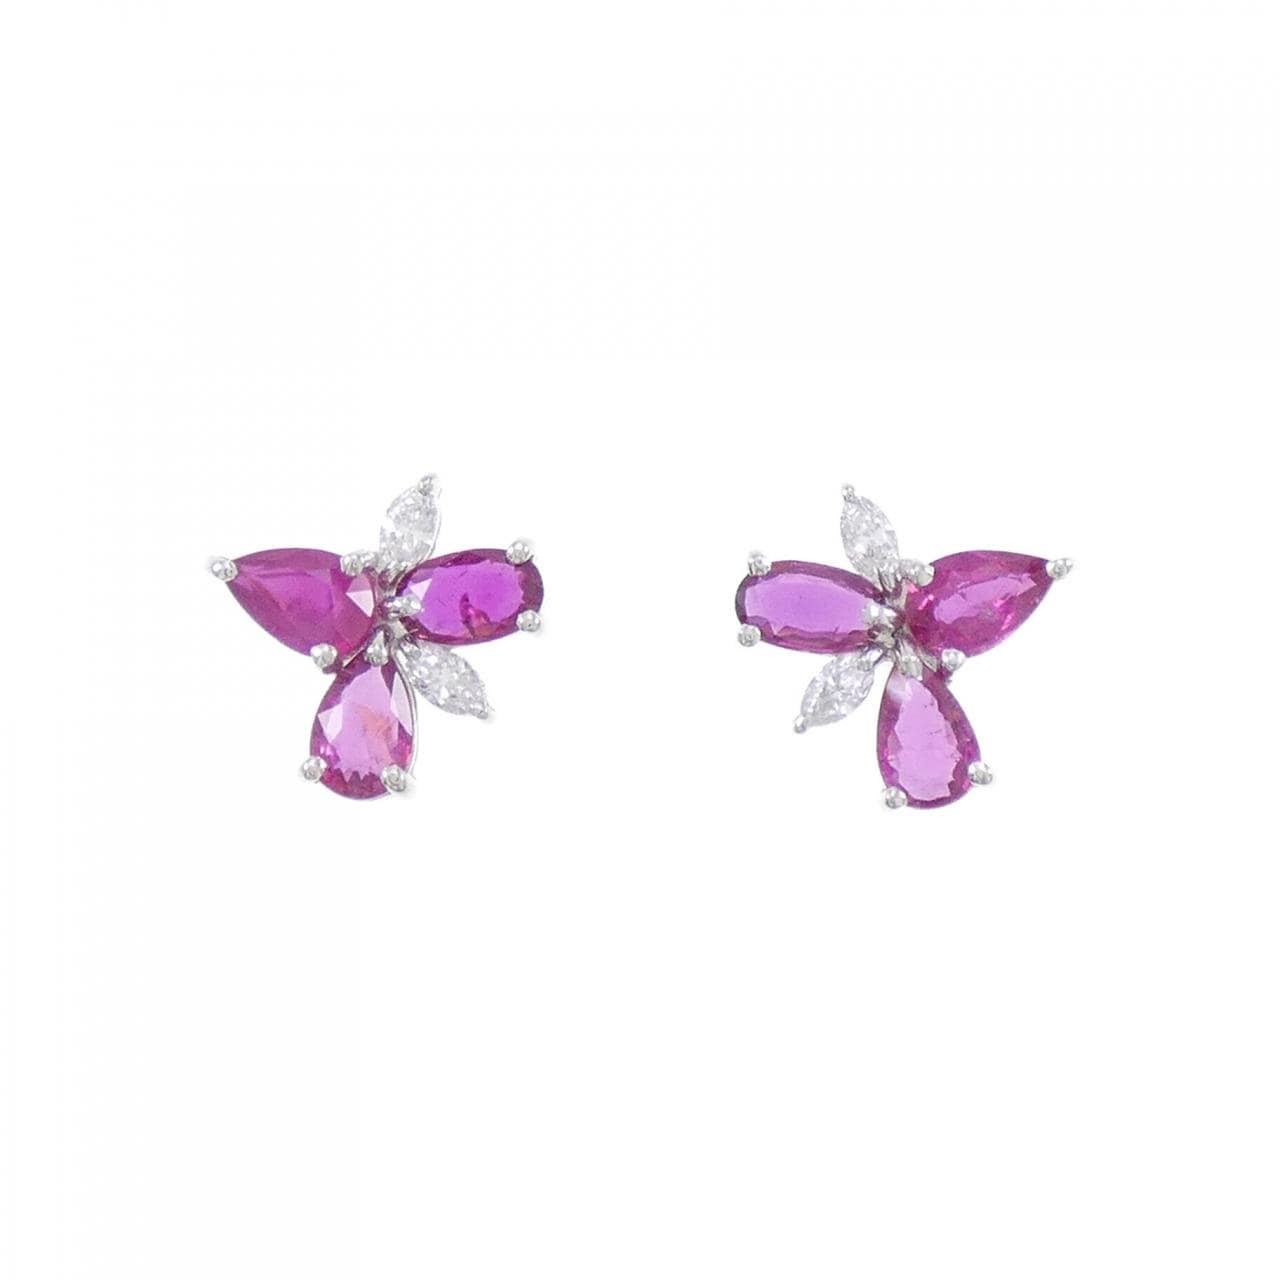 PT ruby earrings 2.64CT